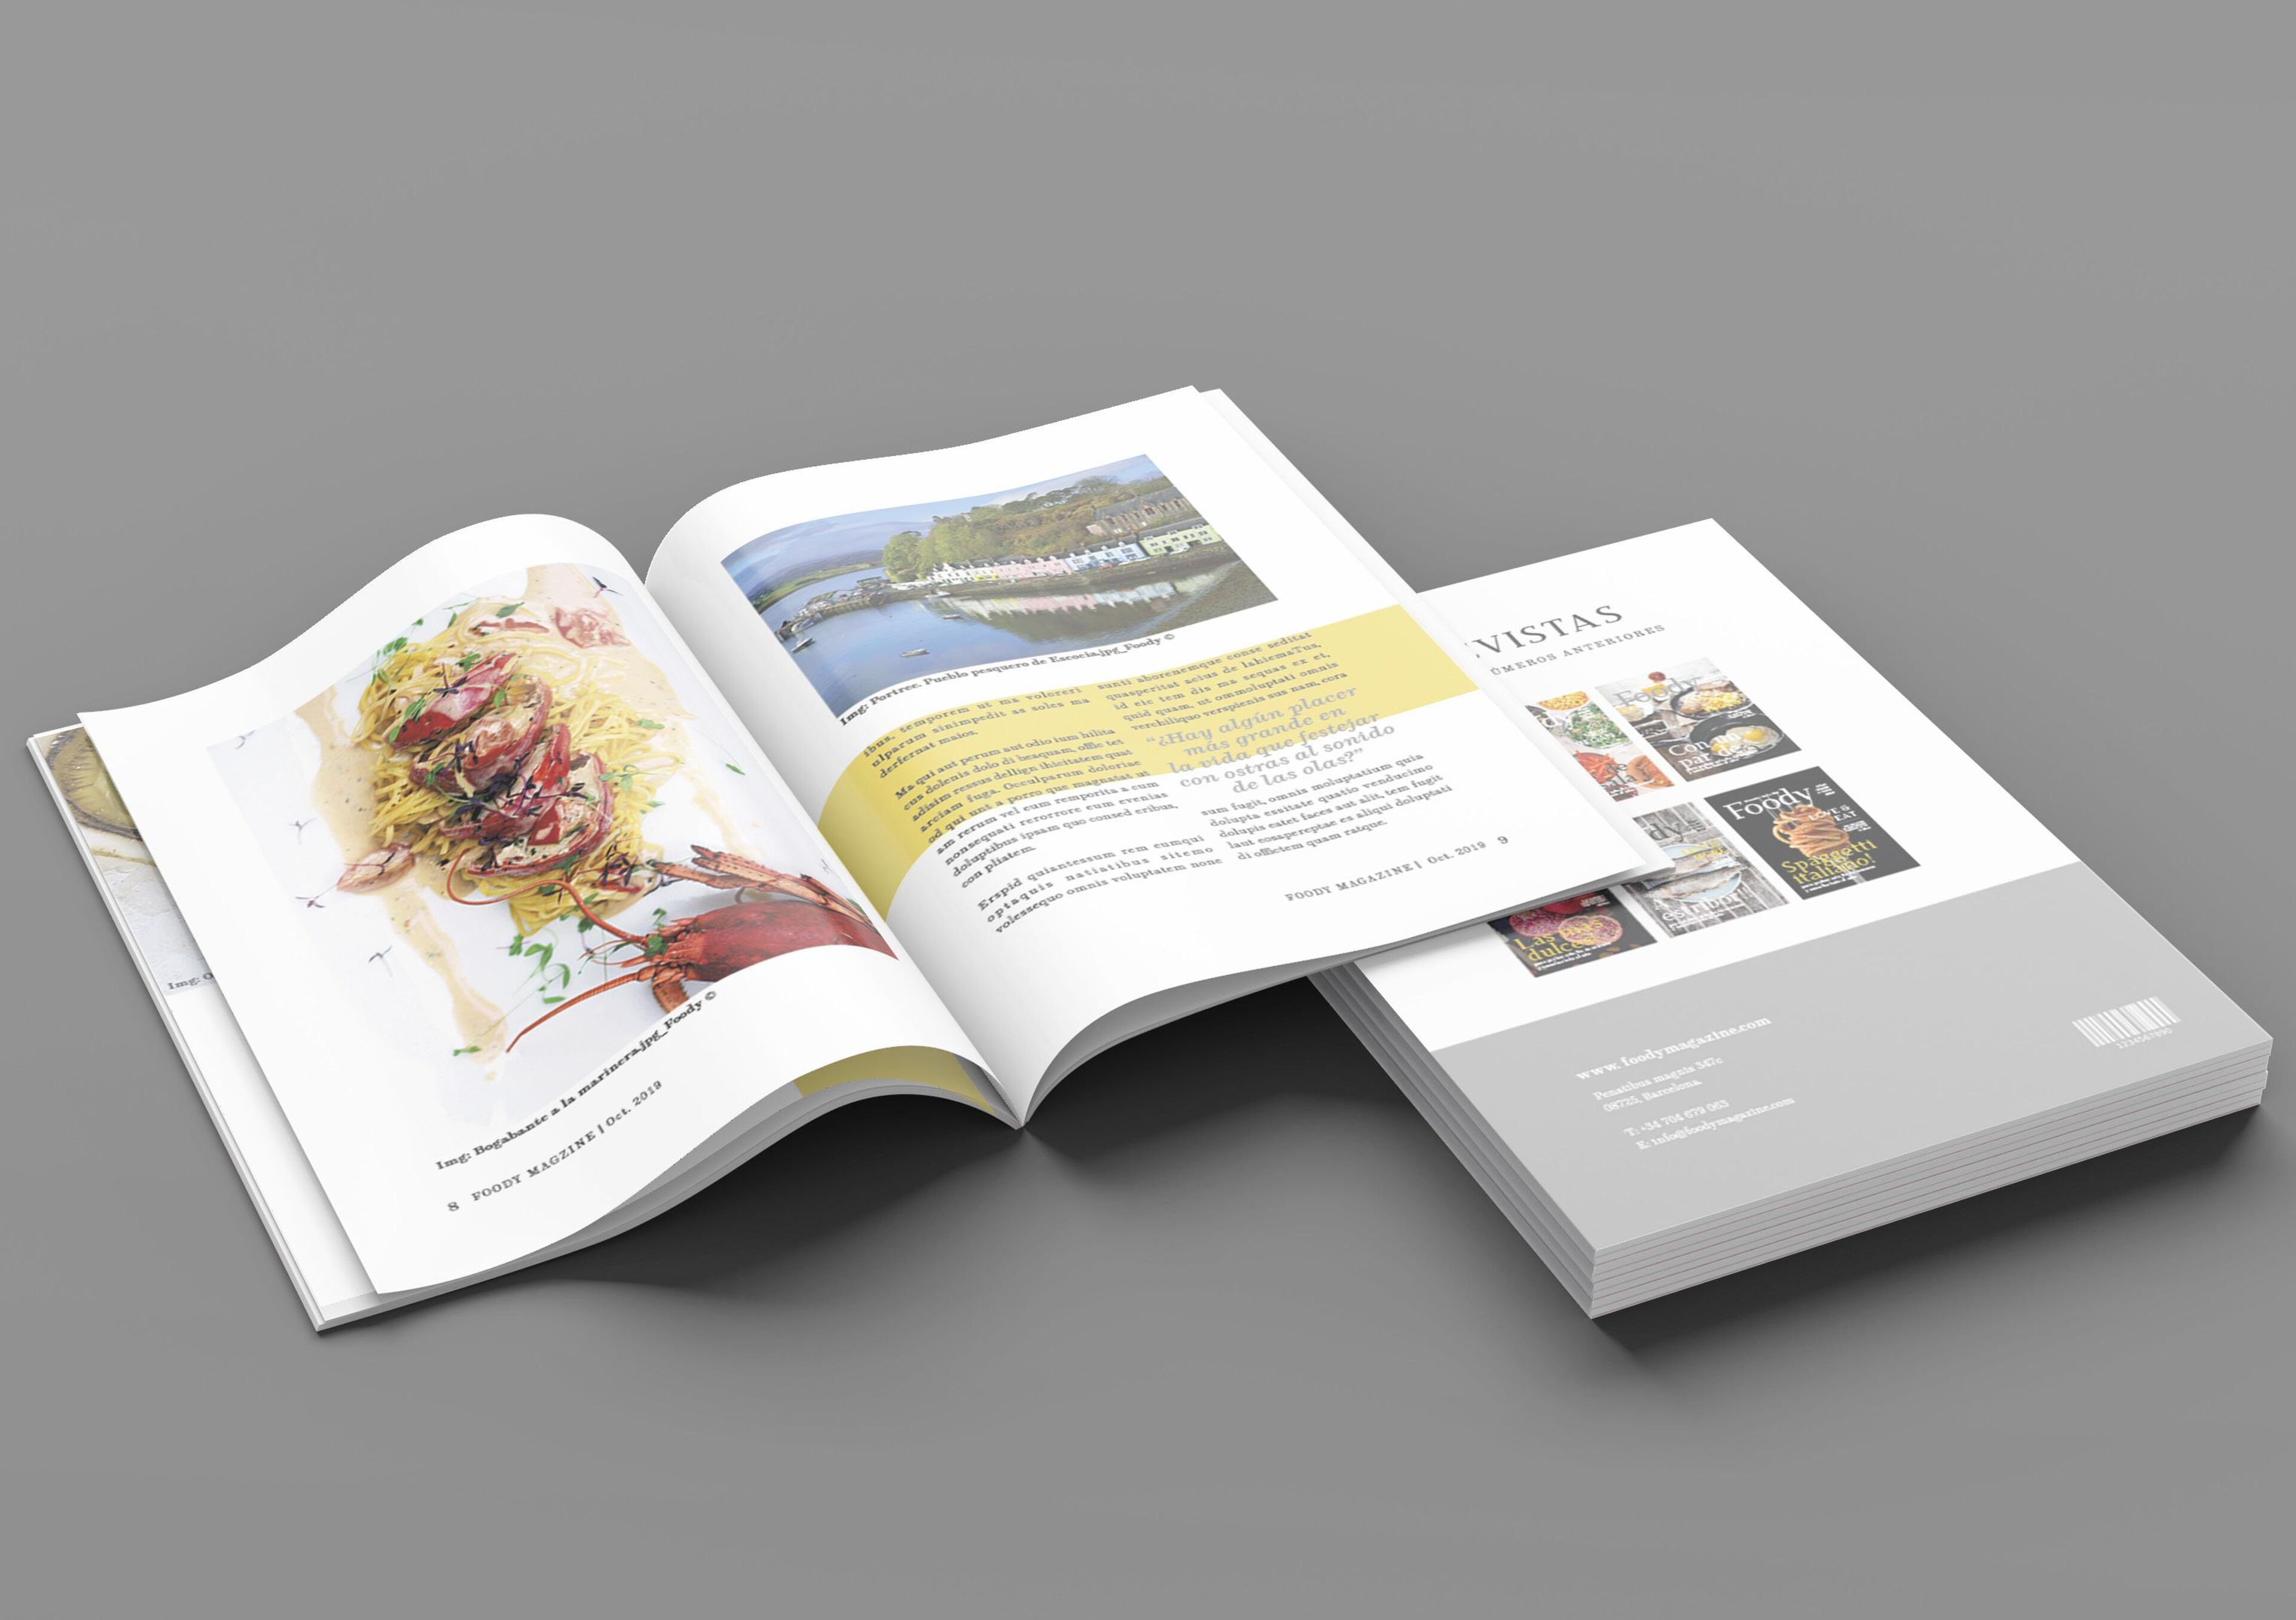 Una revista de arte de impresión de alta calidad abierta, exhibiendo arte vibrante junto a texto.